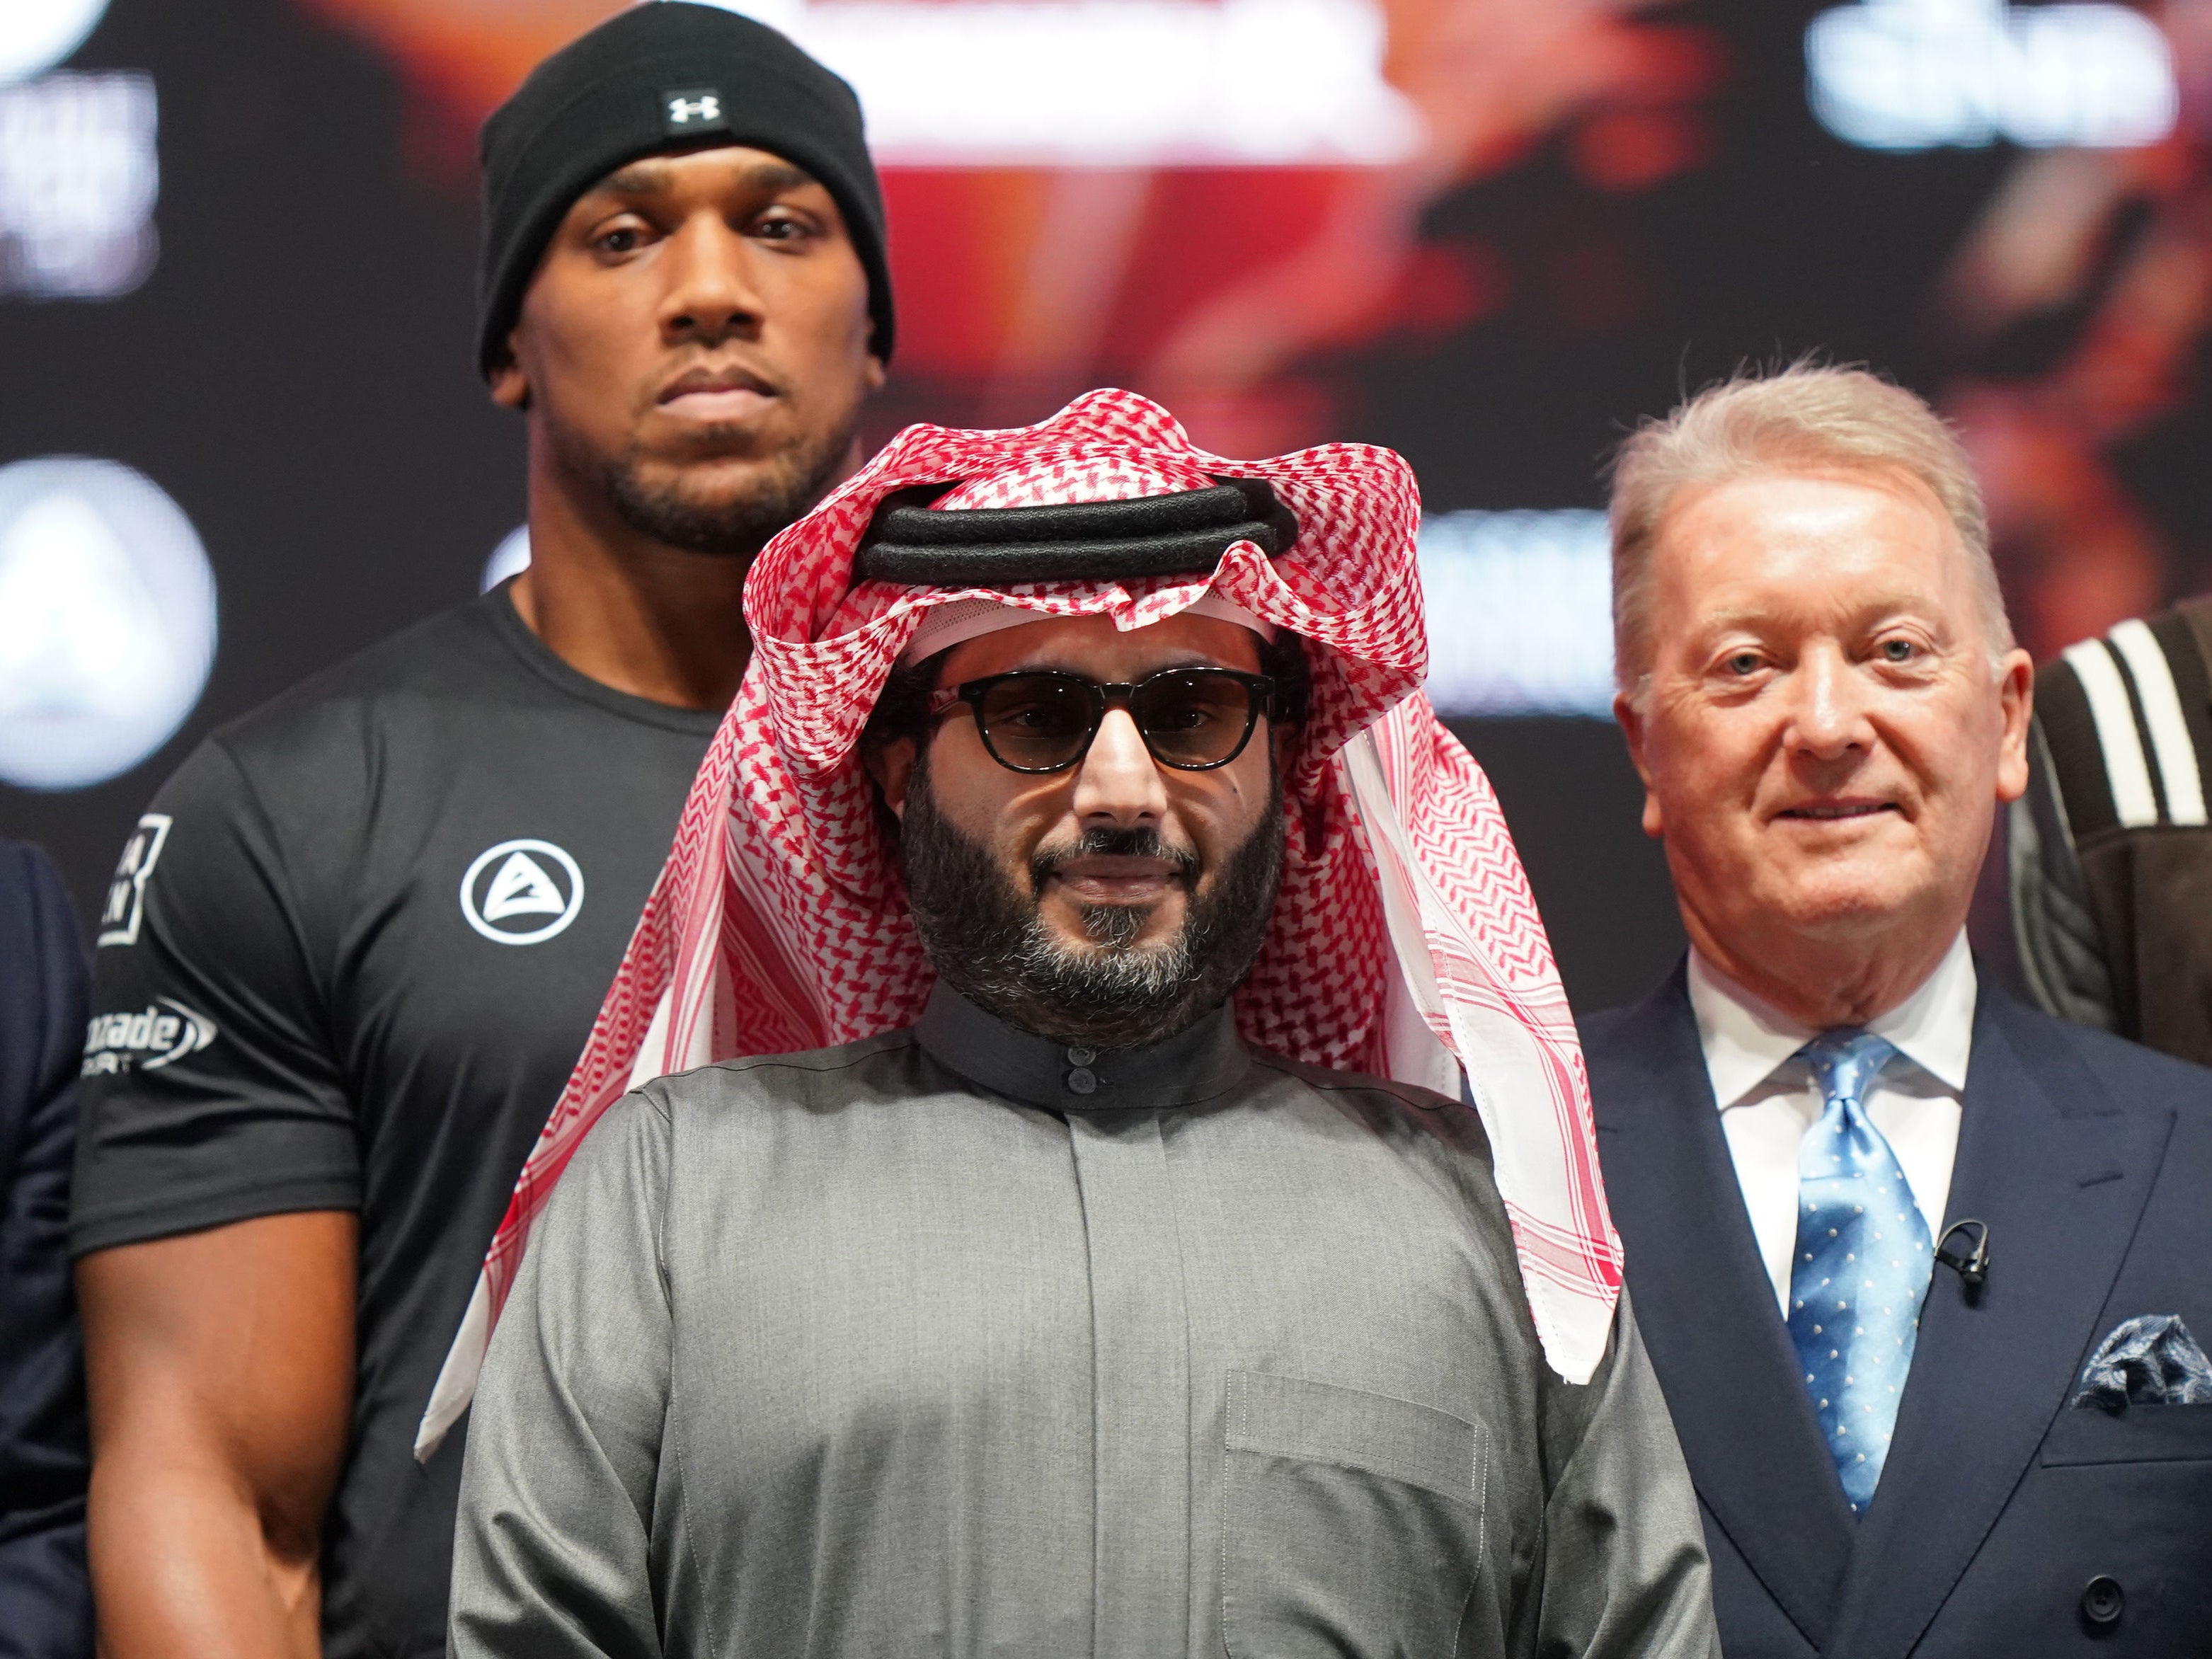 Turki Al-Sheikh has put together a huge night of boxing in Riyadh